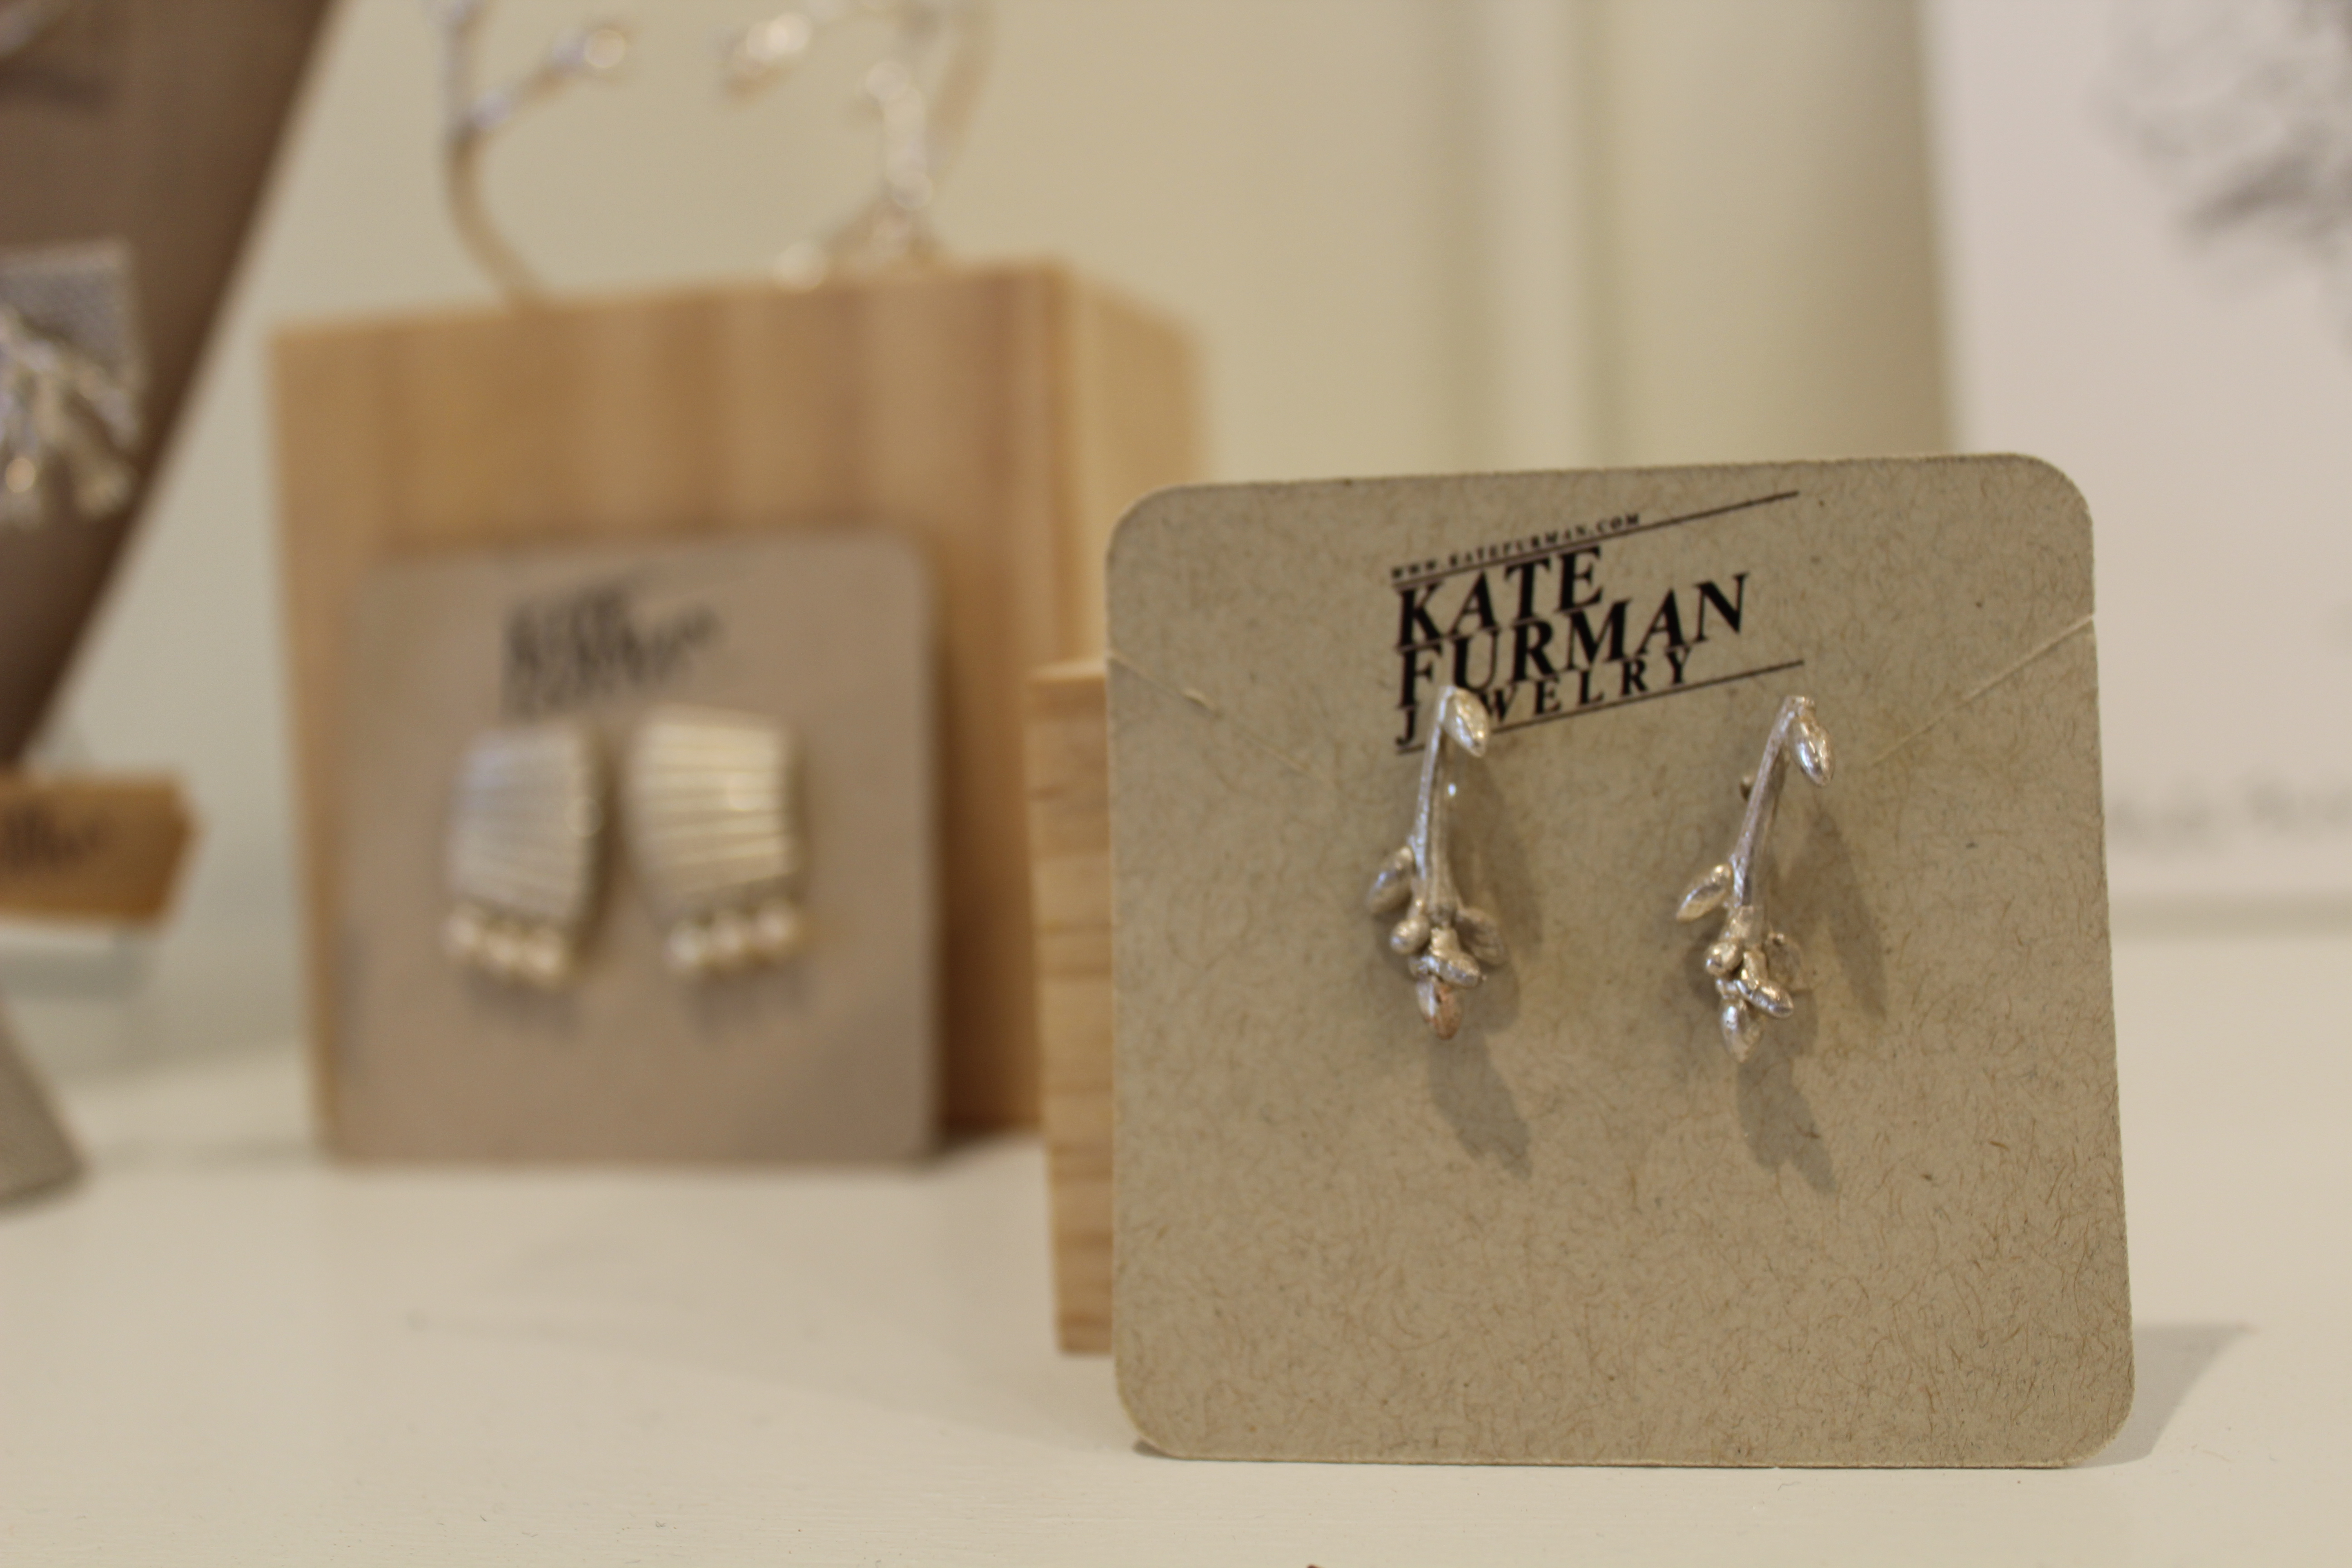 Kate Furman earrings